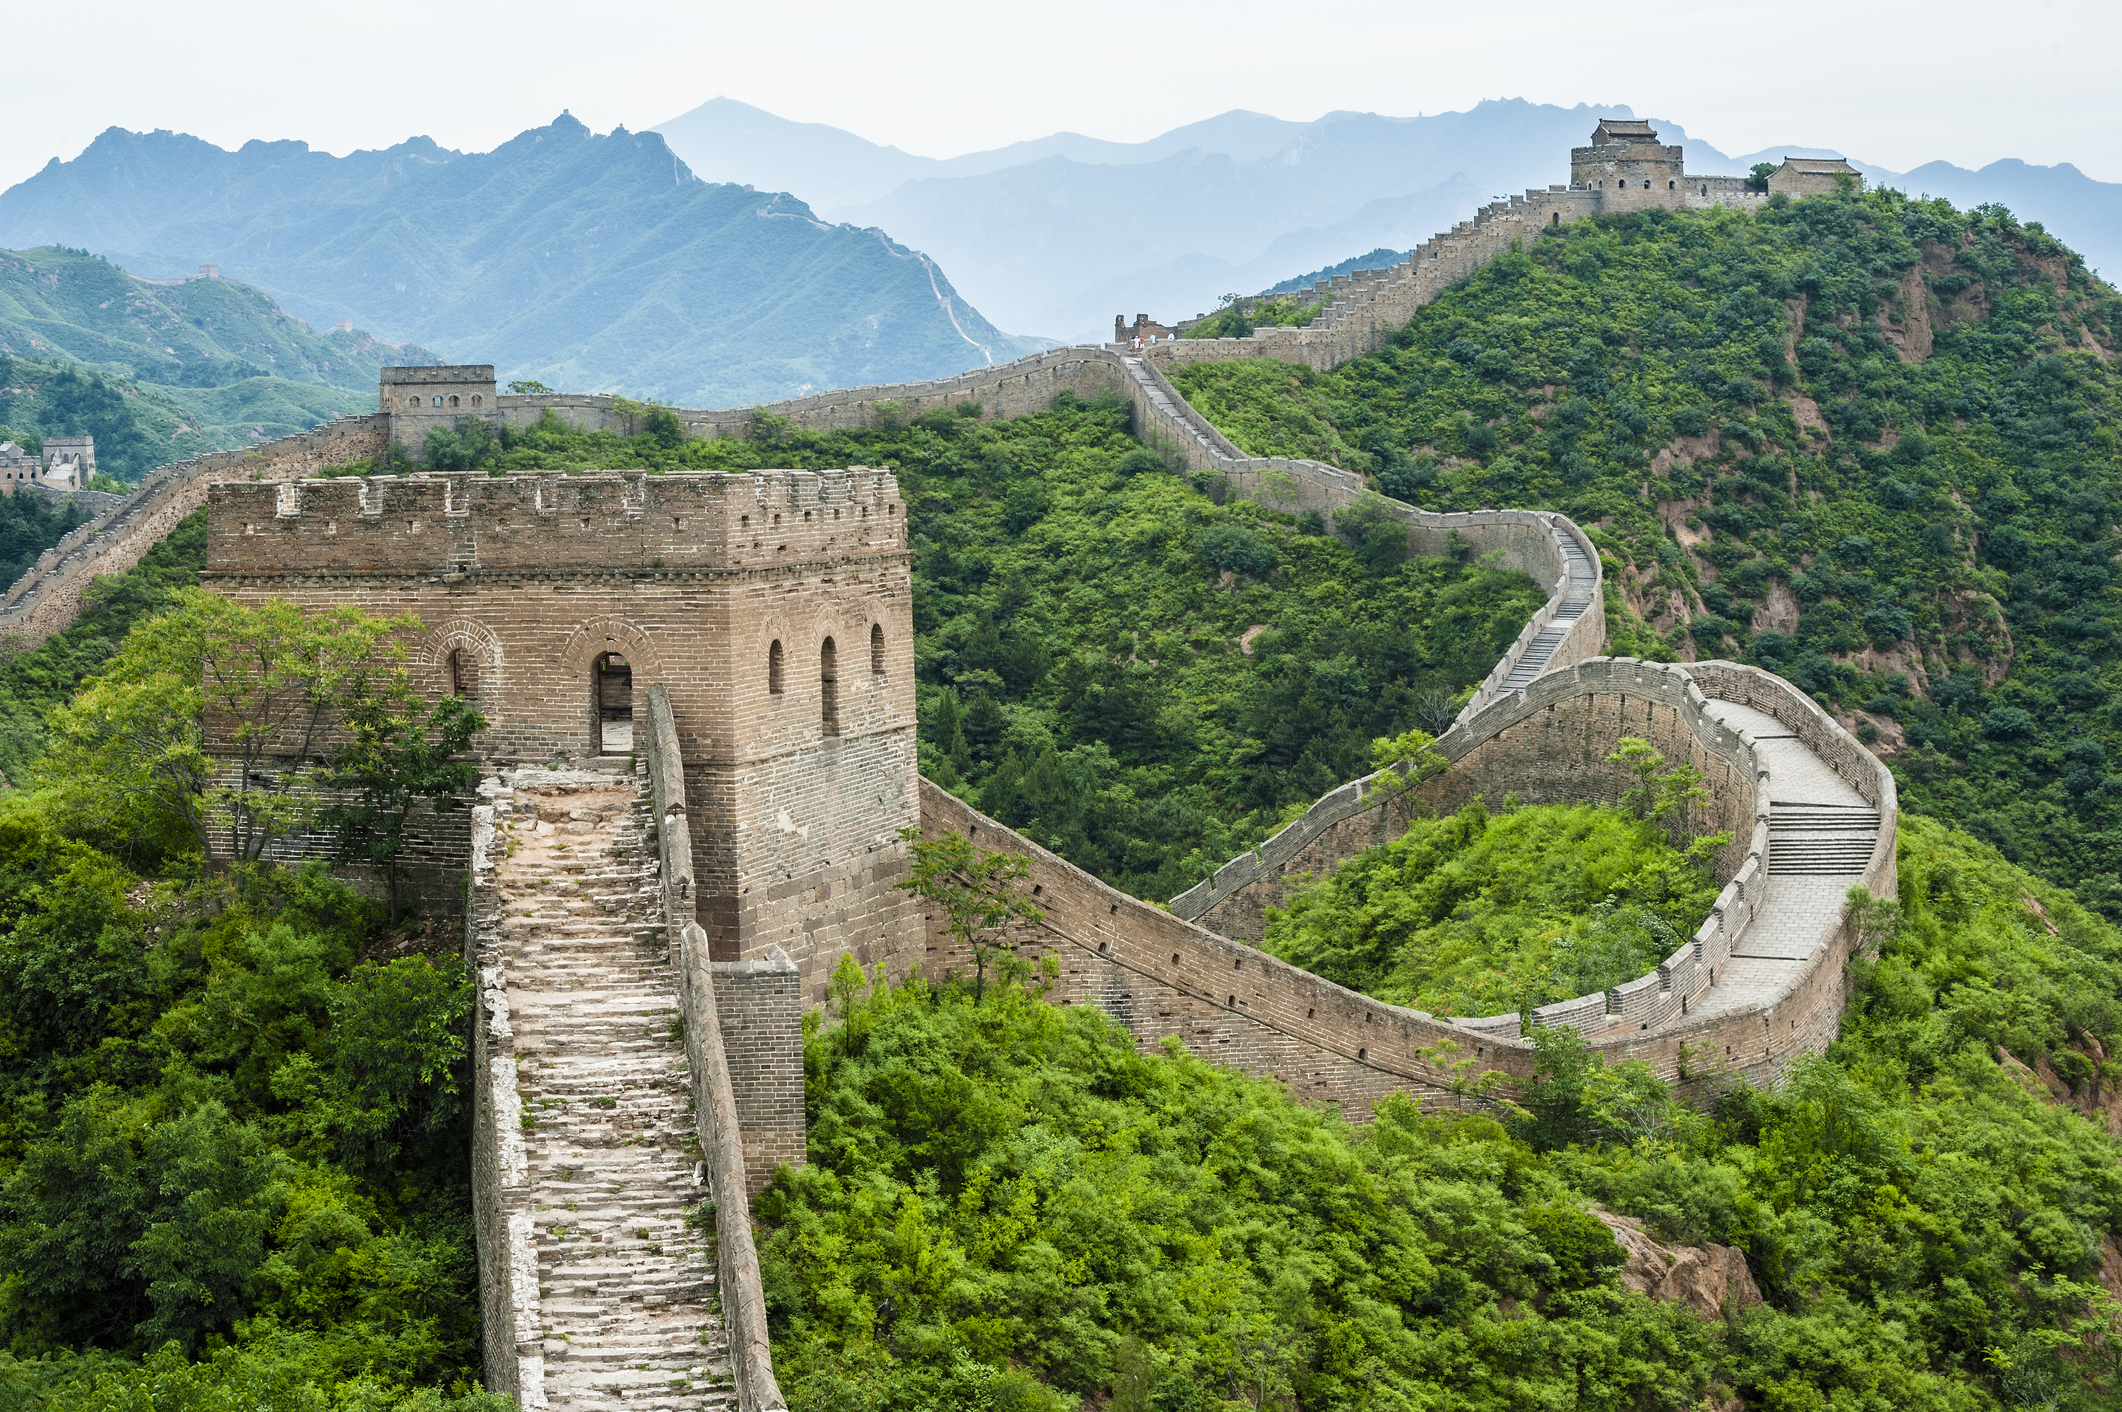 Jinshanling Great Wall, Hebei of China